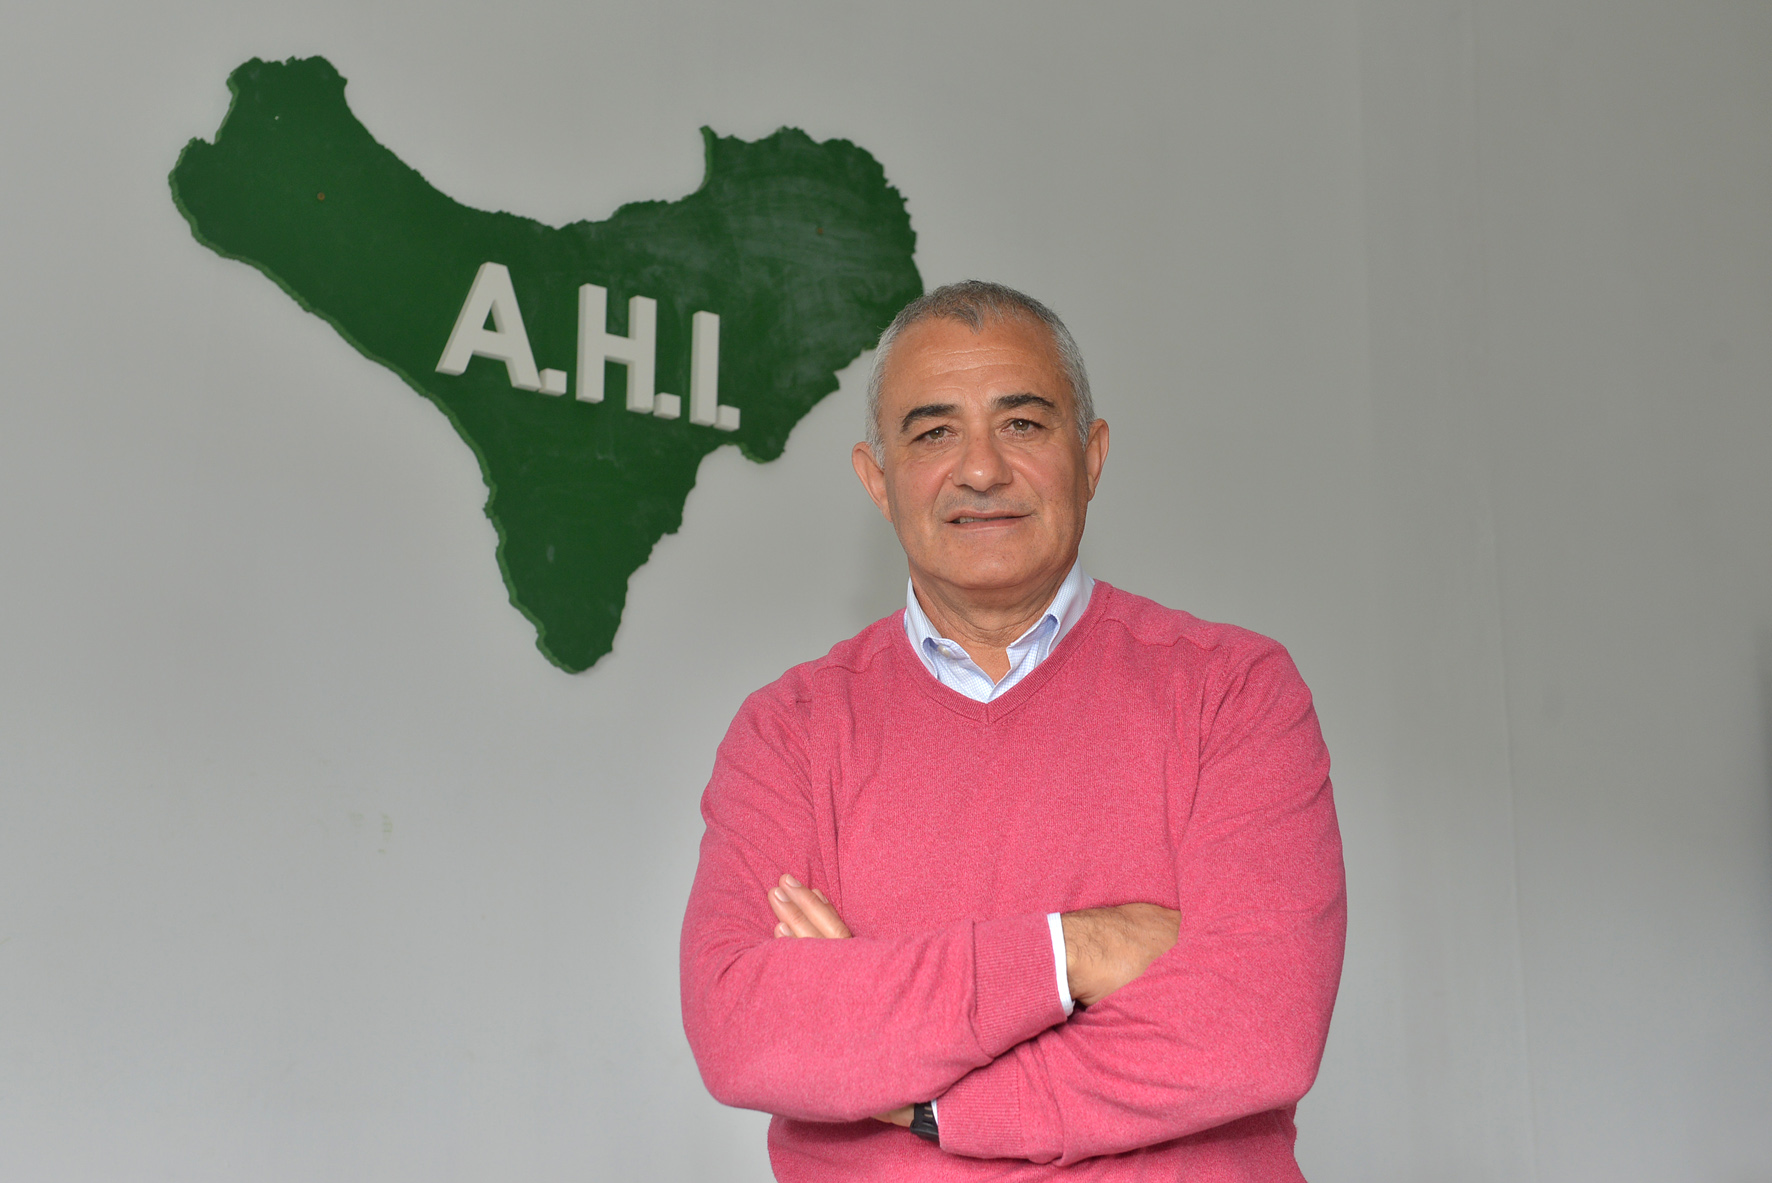 AHI se opone al nombramiento de directores insulares por “estrictamente por afinidad política”